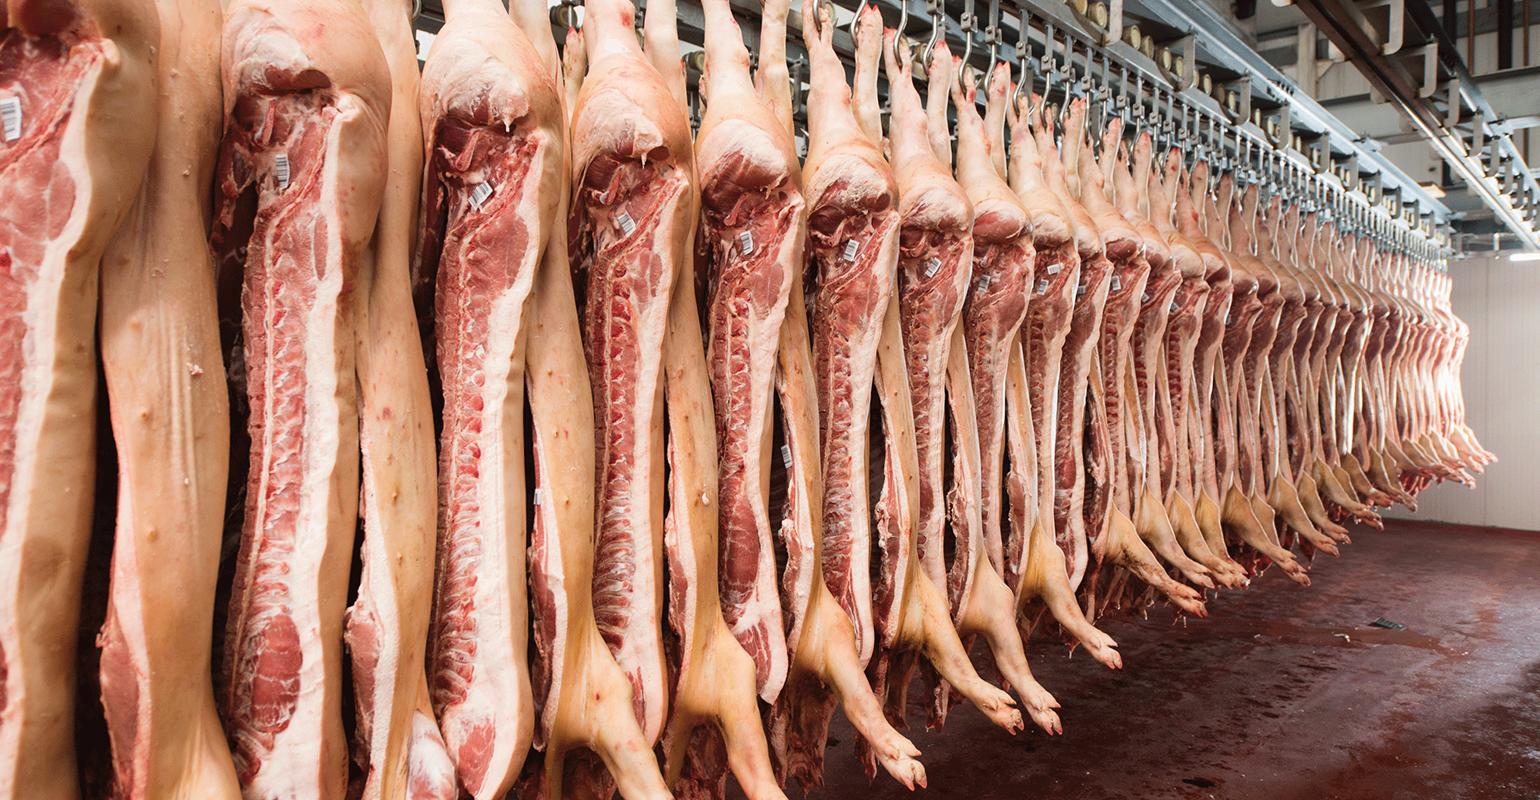 Korona bi mogla dokrajčiti već načetu mesnu industriju